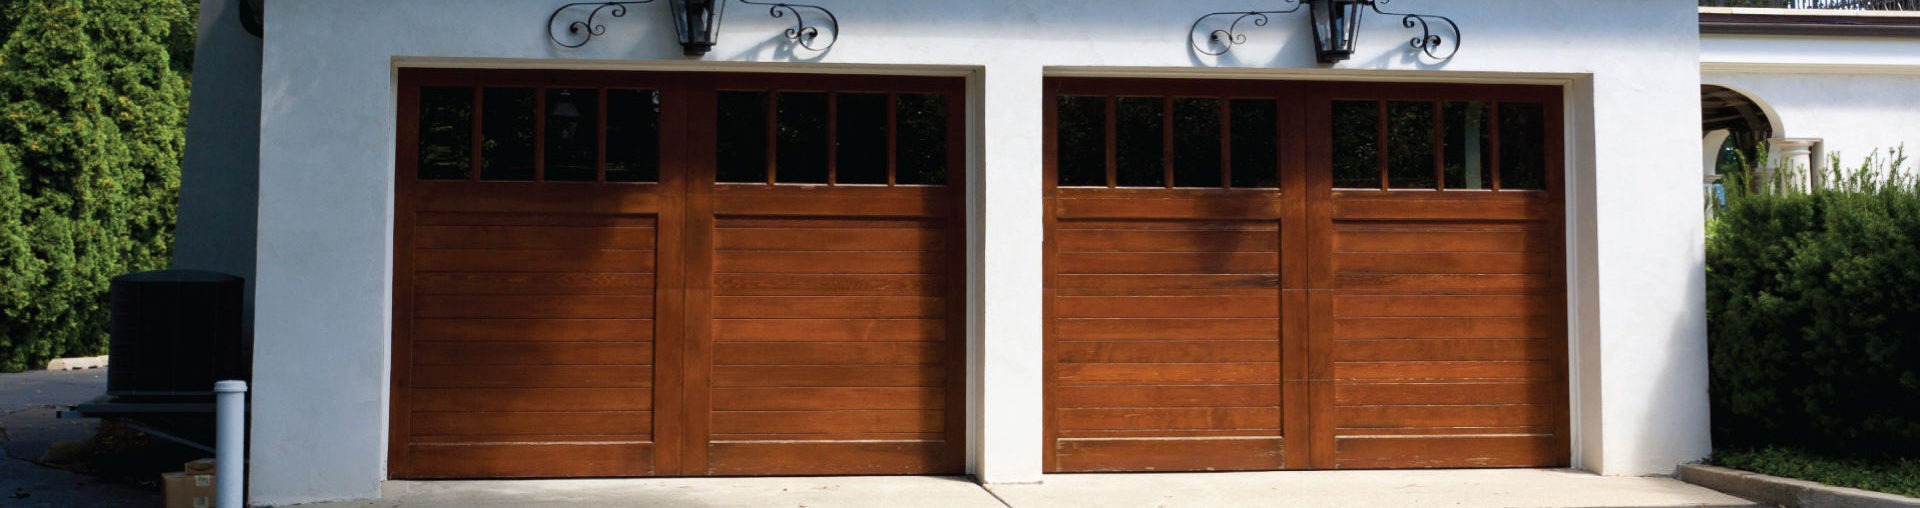 carriage garage doors